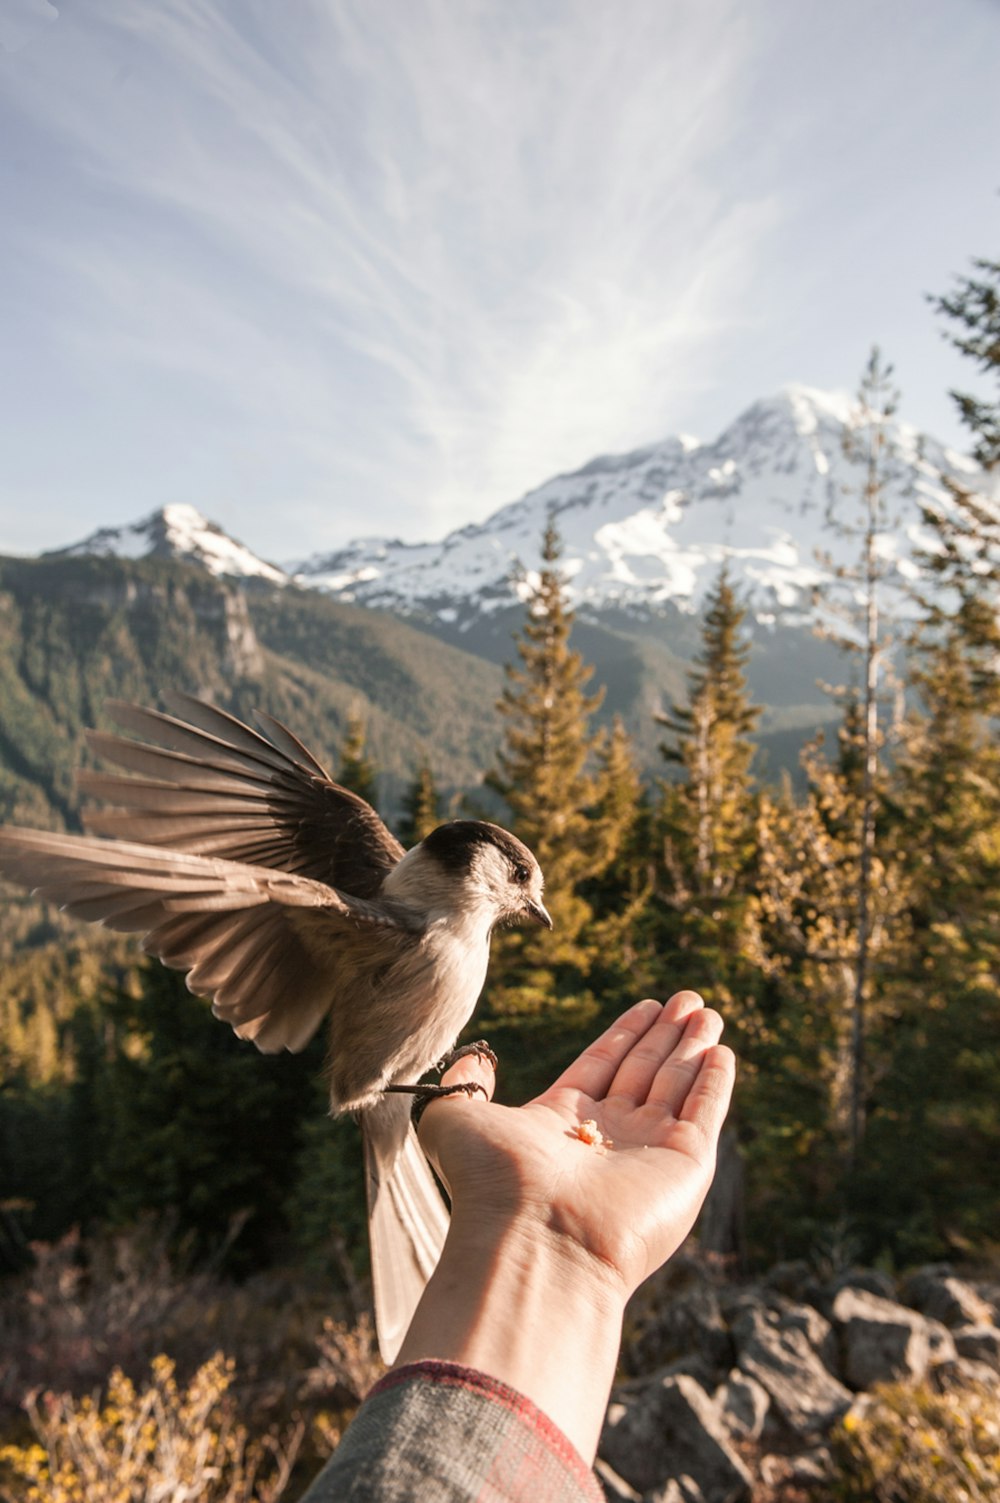 brauner Vogel sitzt auf der linken Handfläche